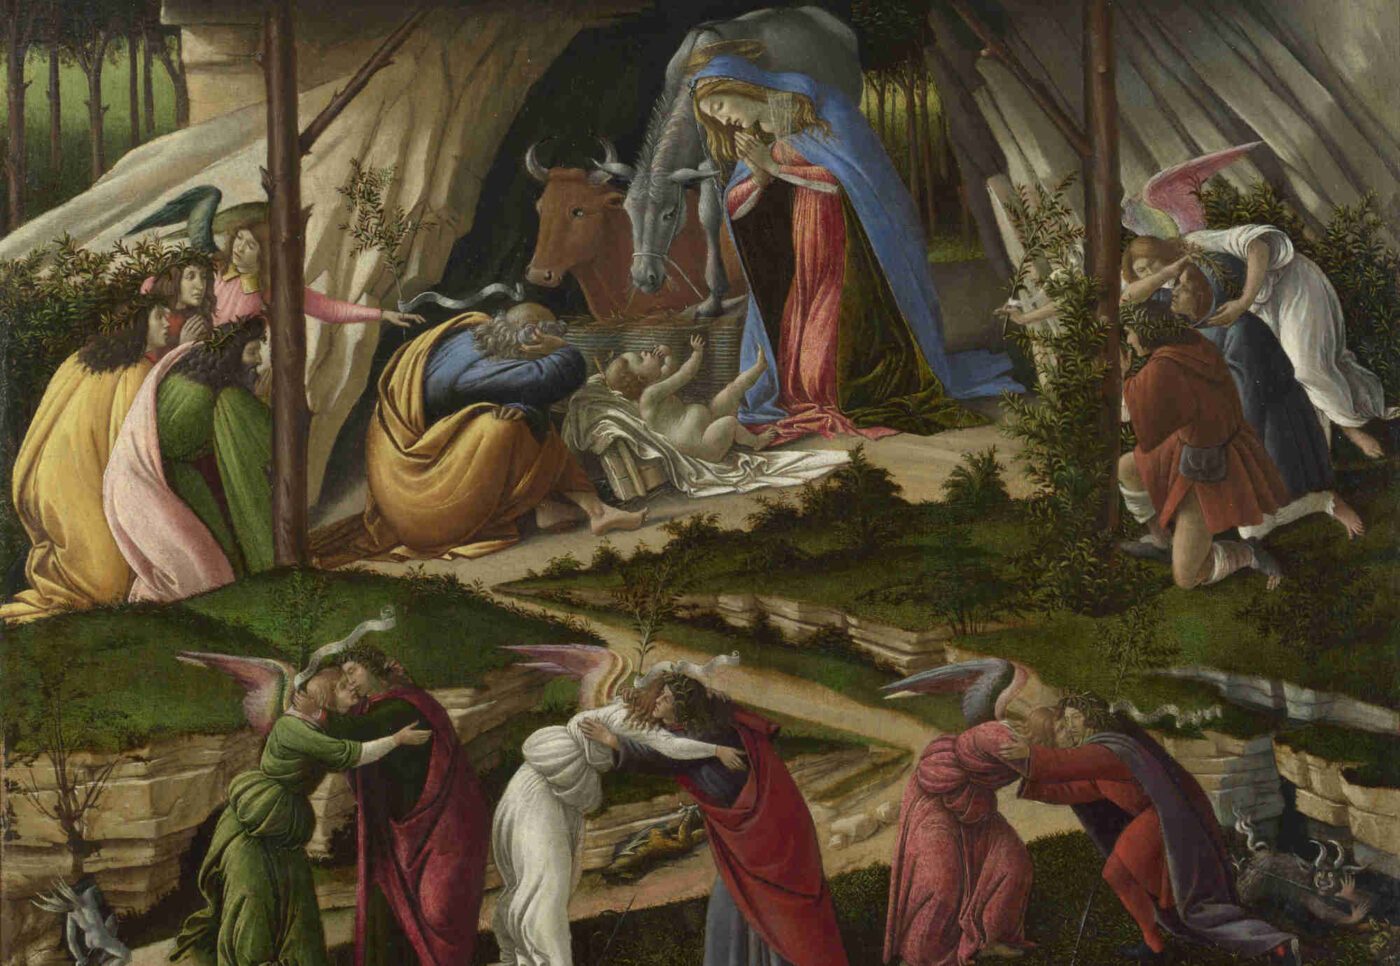 Gott kommt als Baby zur Welt, „als Kind in all seiner Schwachheit, sich an unsere Seite zu stellen“. Bild: Sandro Botticelli "Mystische Geburt" 1500 (Ausschnitt), wikimedia/Crisco 1492, Public Domain